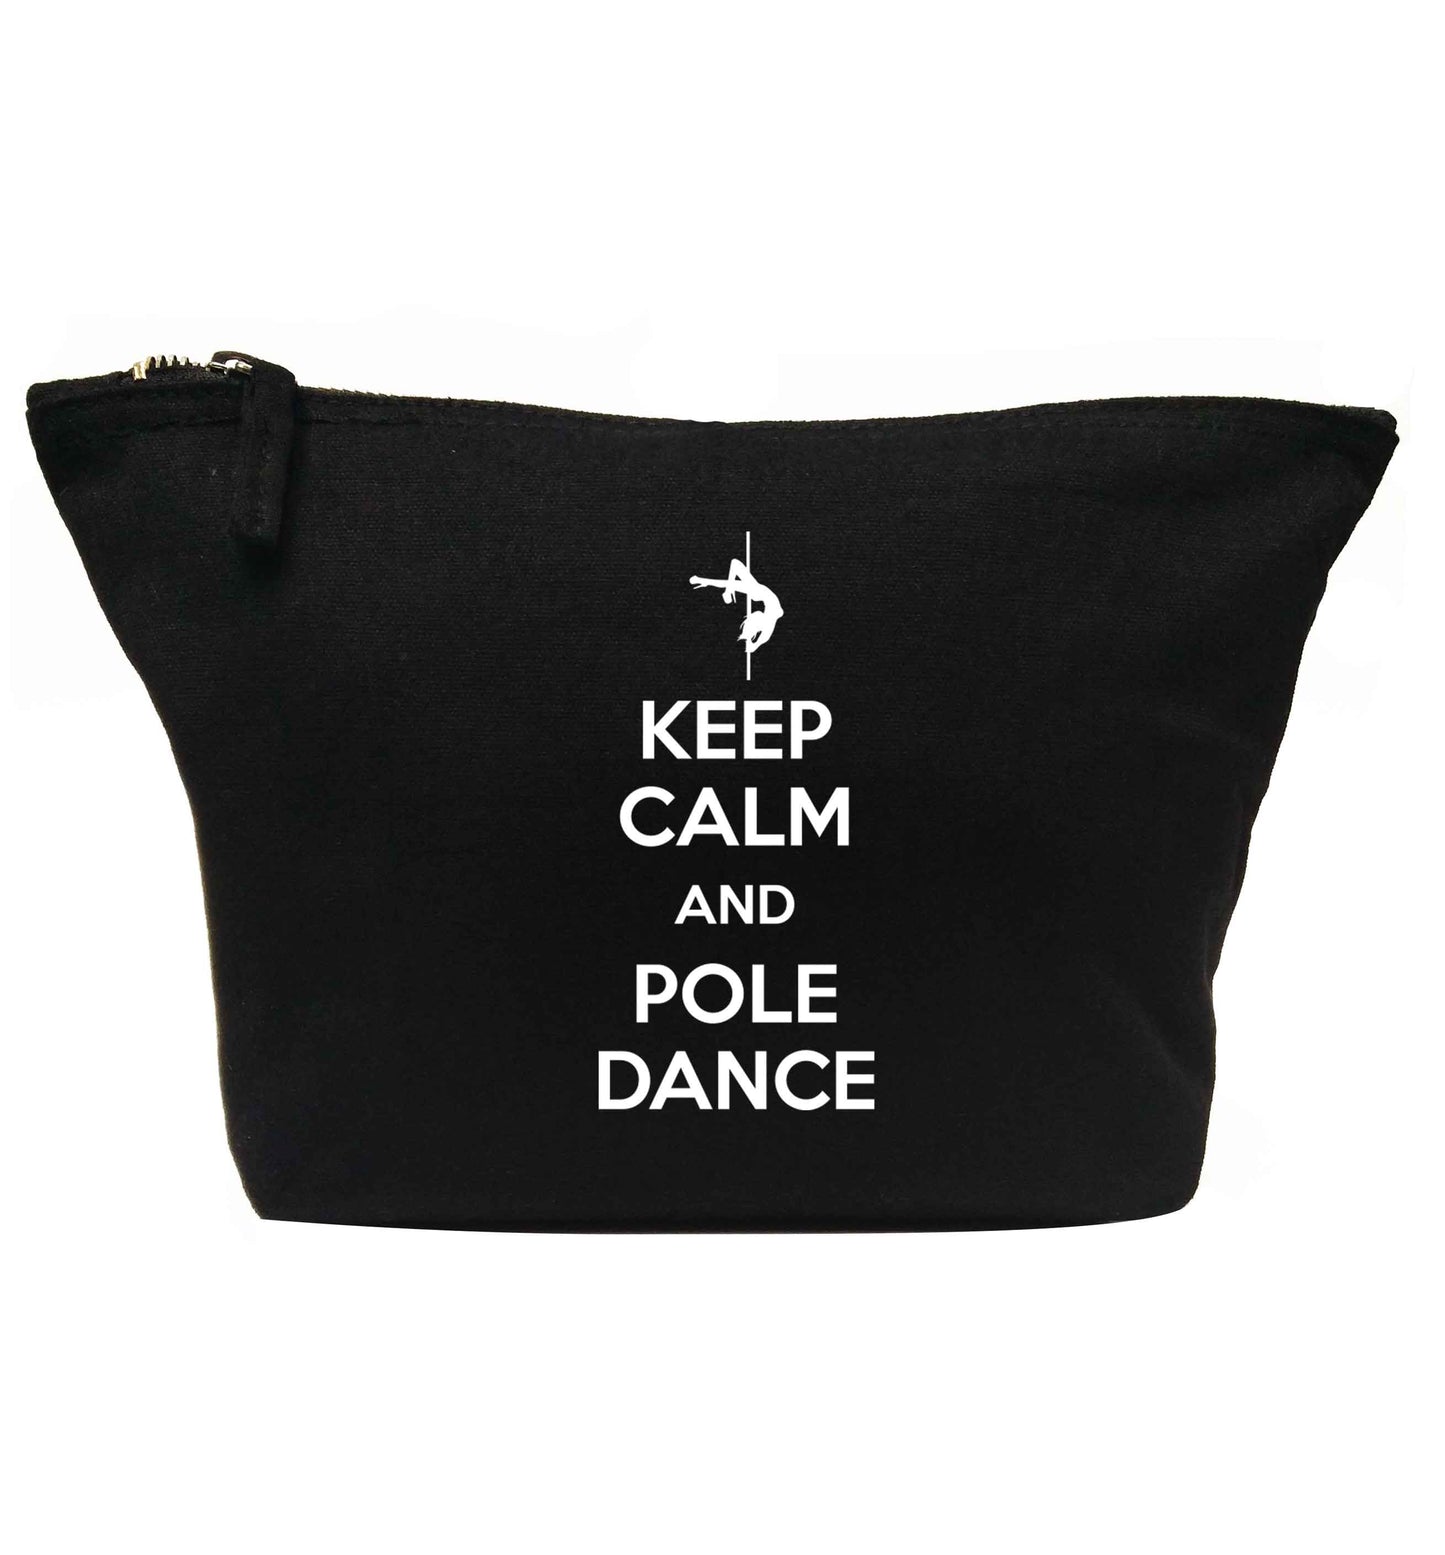 Keep calm and pole dance | Makeup / wash bag